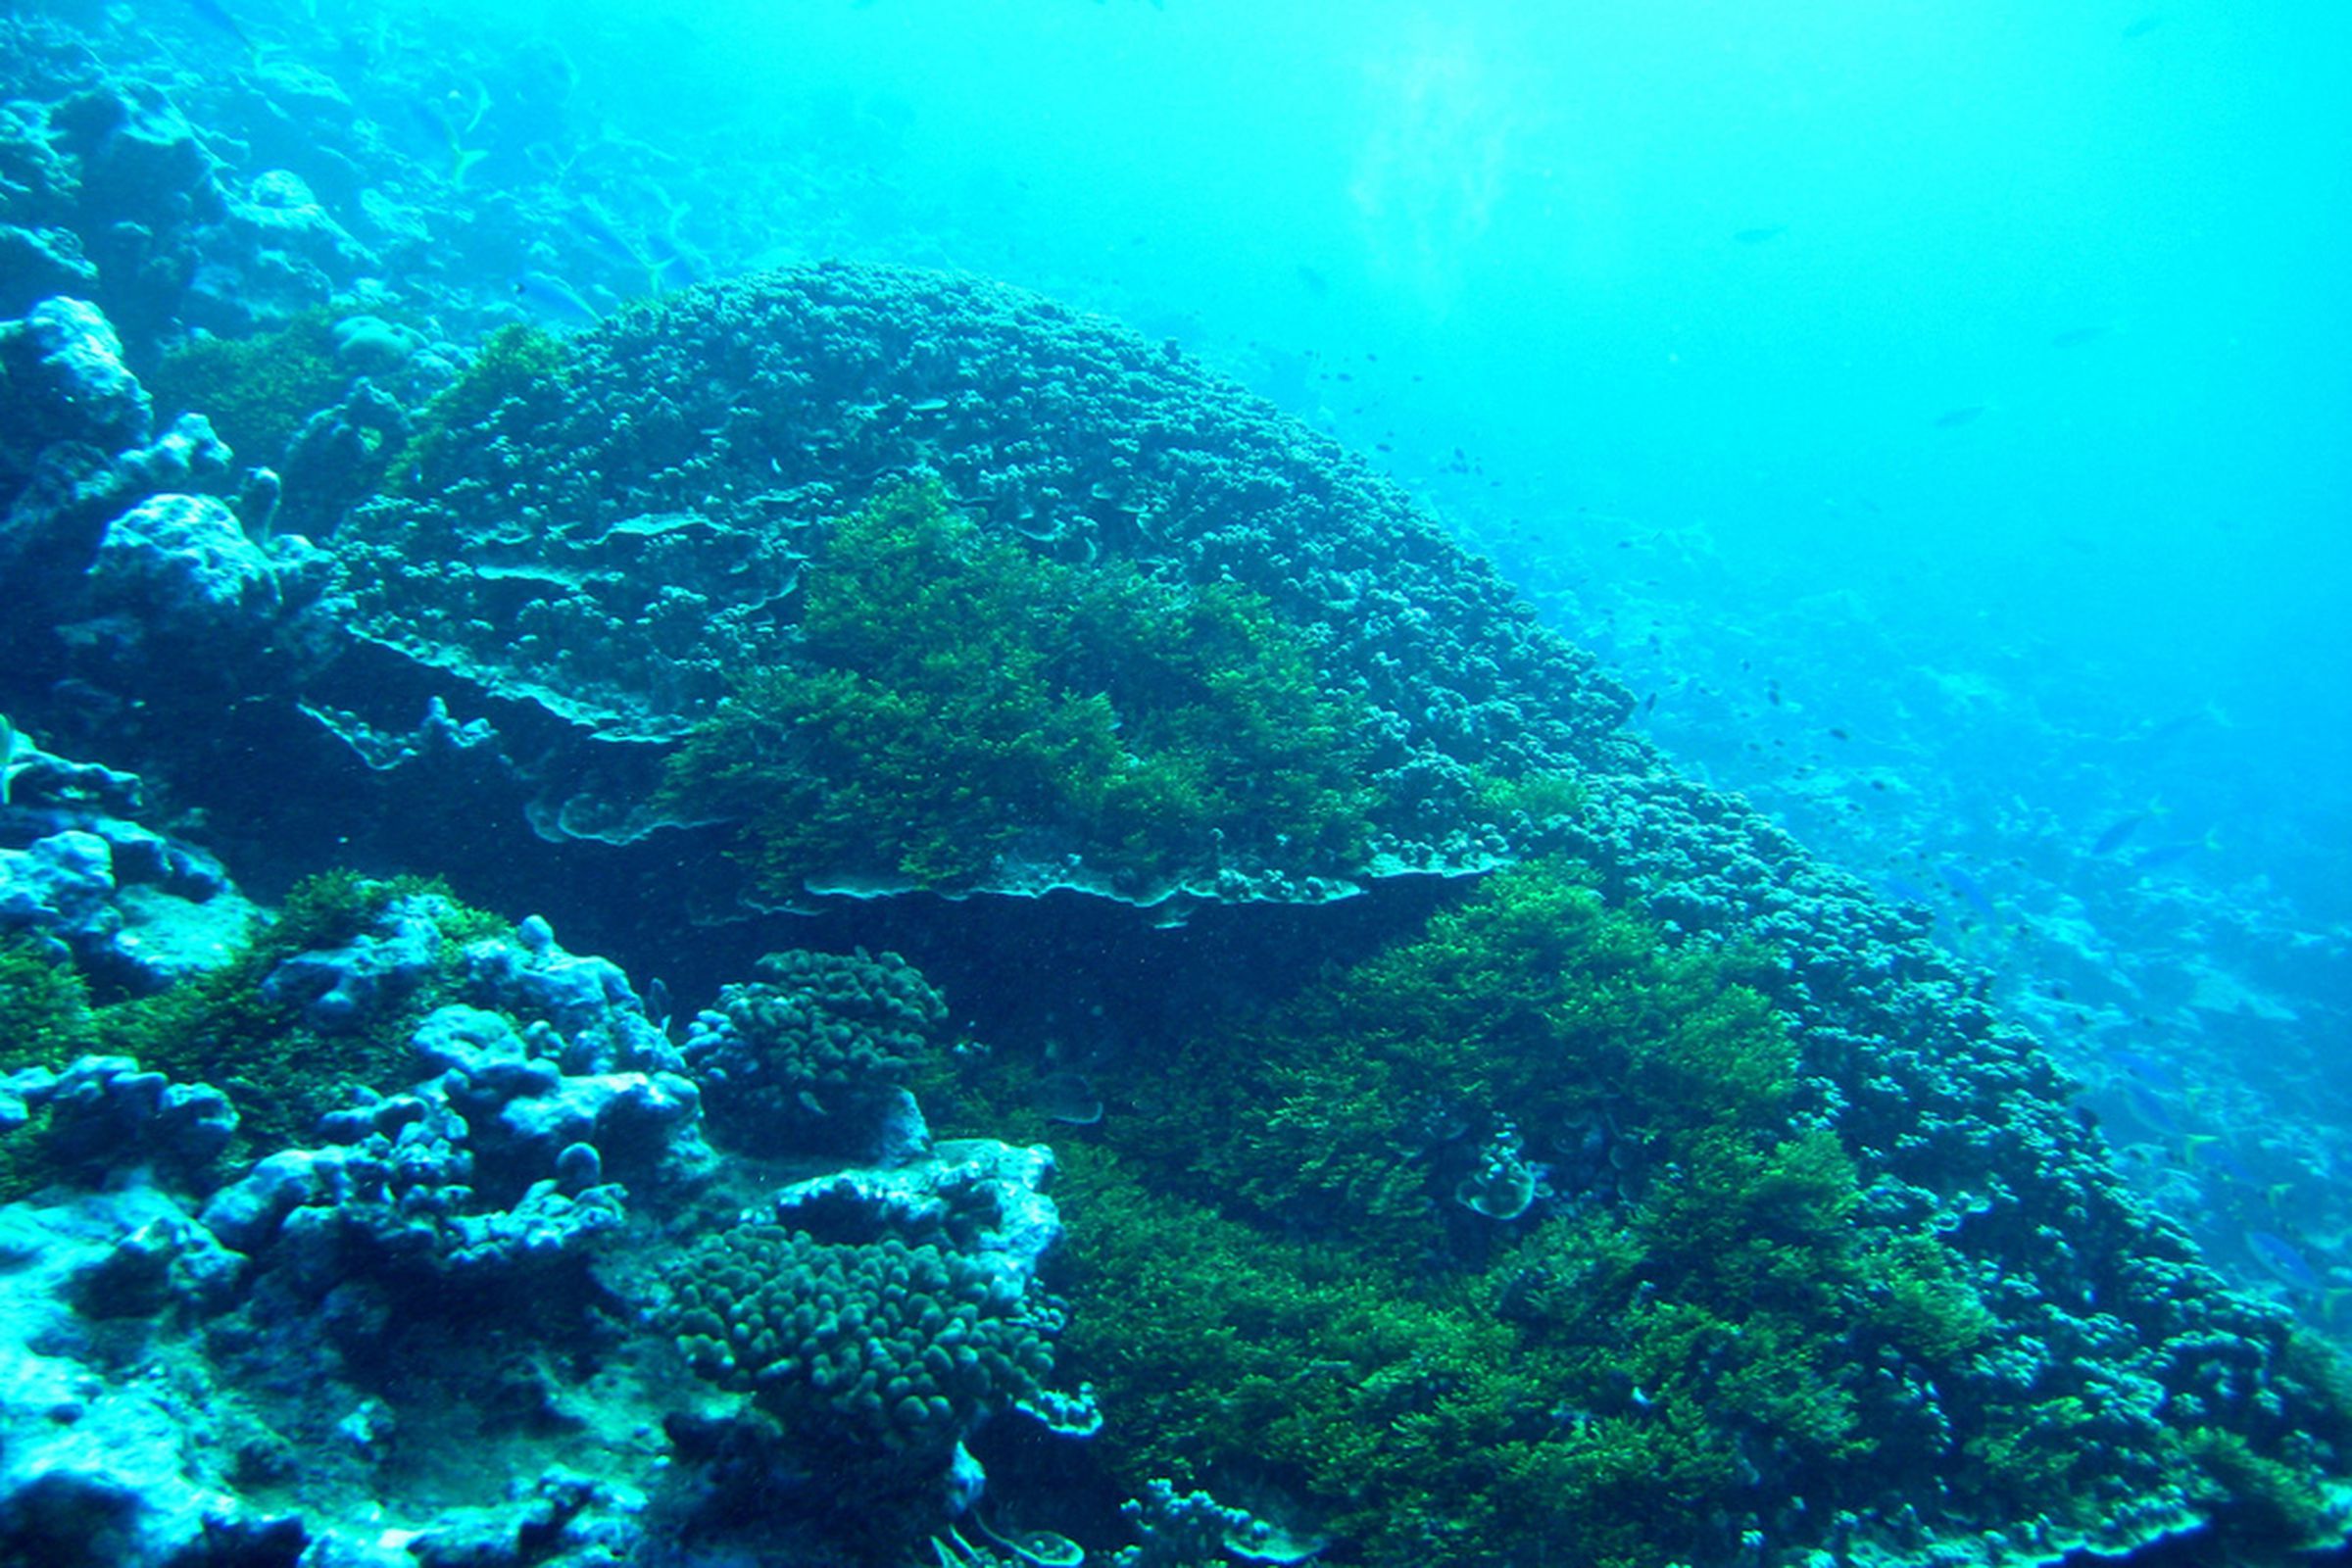 Coral Reef - Attribute NOAA / Flickr